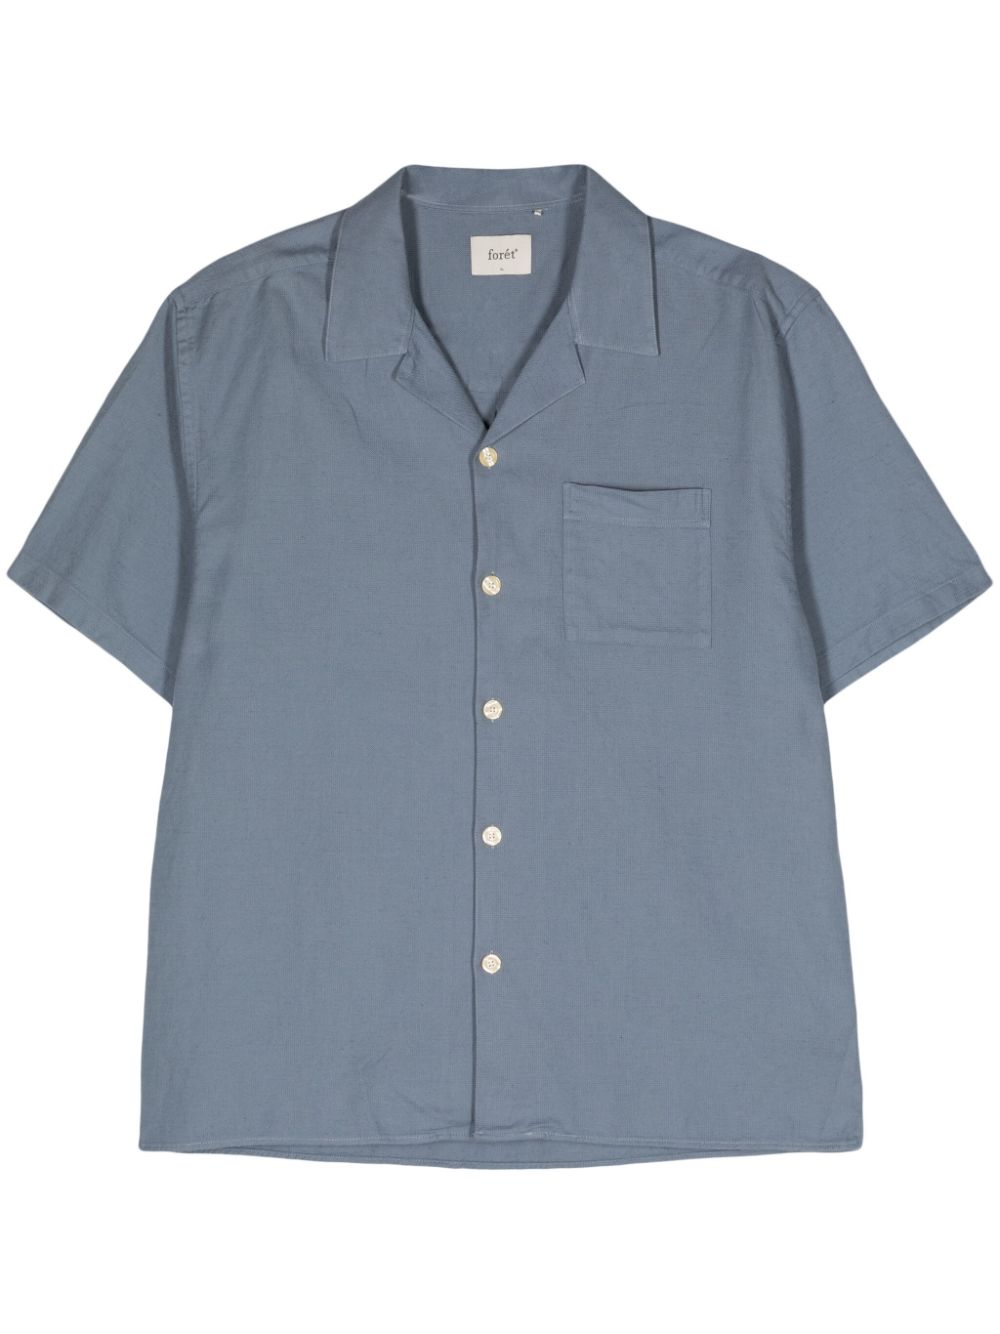 Basin short-sleeve shirt